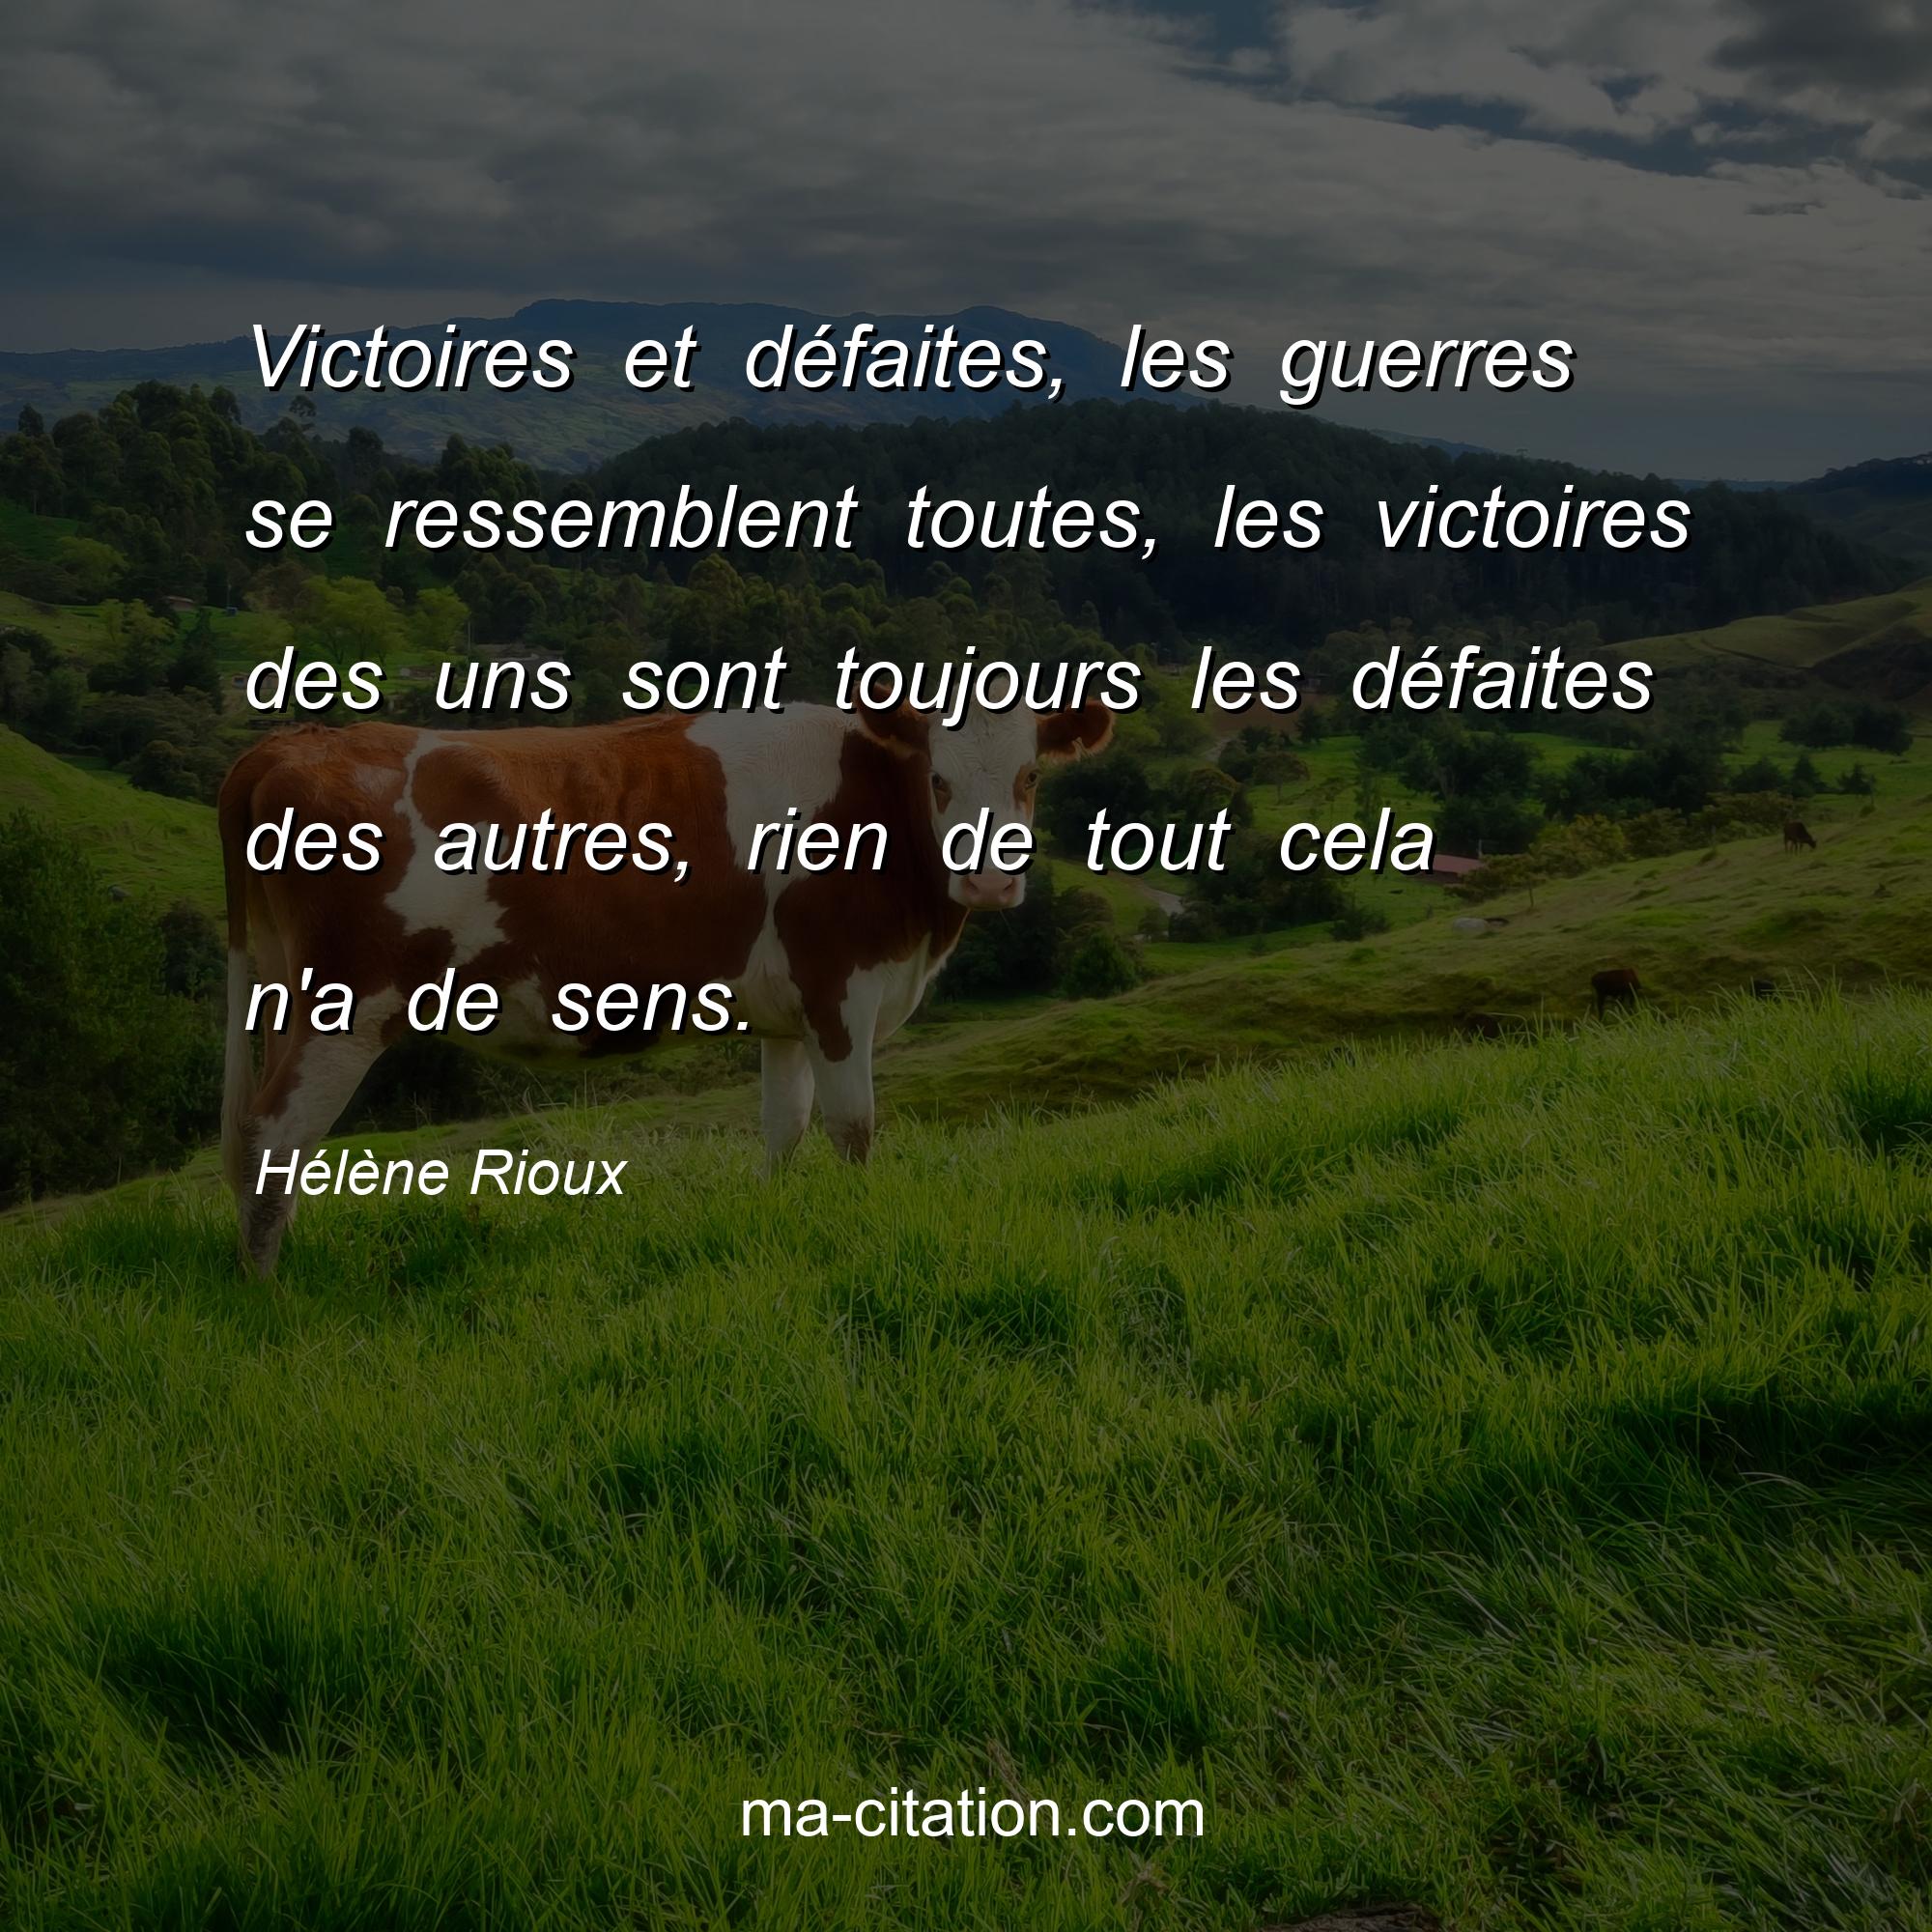 Hélène Rioux : Victoires et défaites, les guerres se ressemblent toutes, les victoires des uns sont toujours les défaites des autres, rien de tout cela n'a de sens.